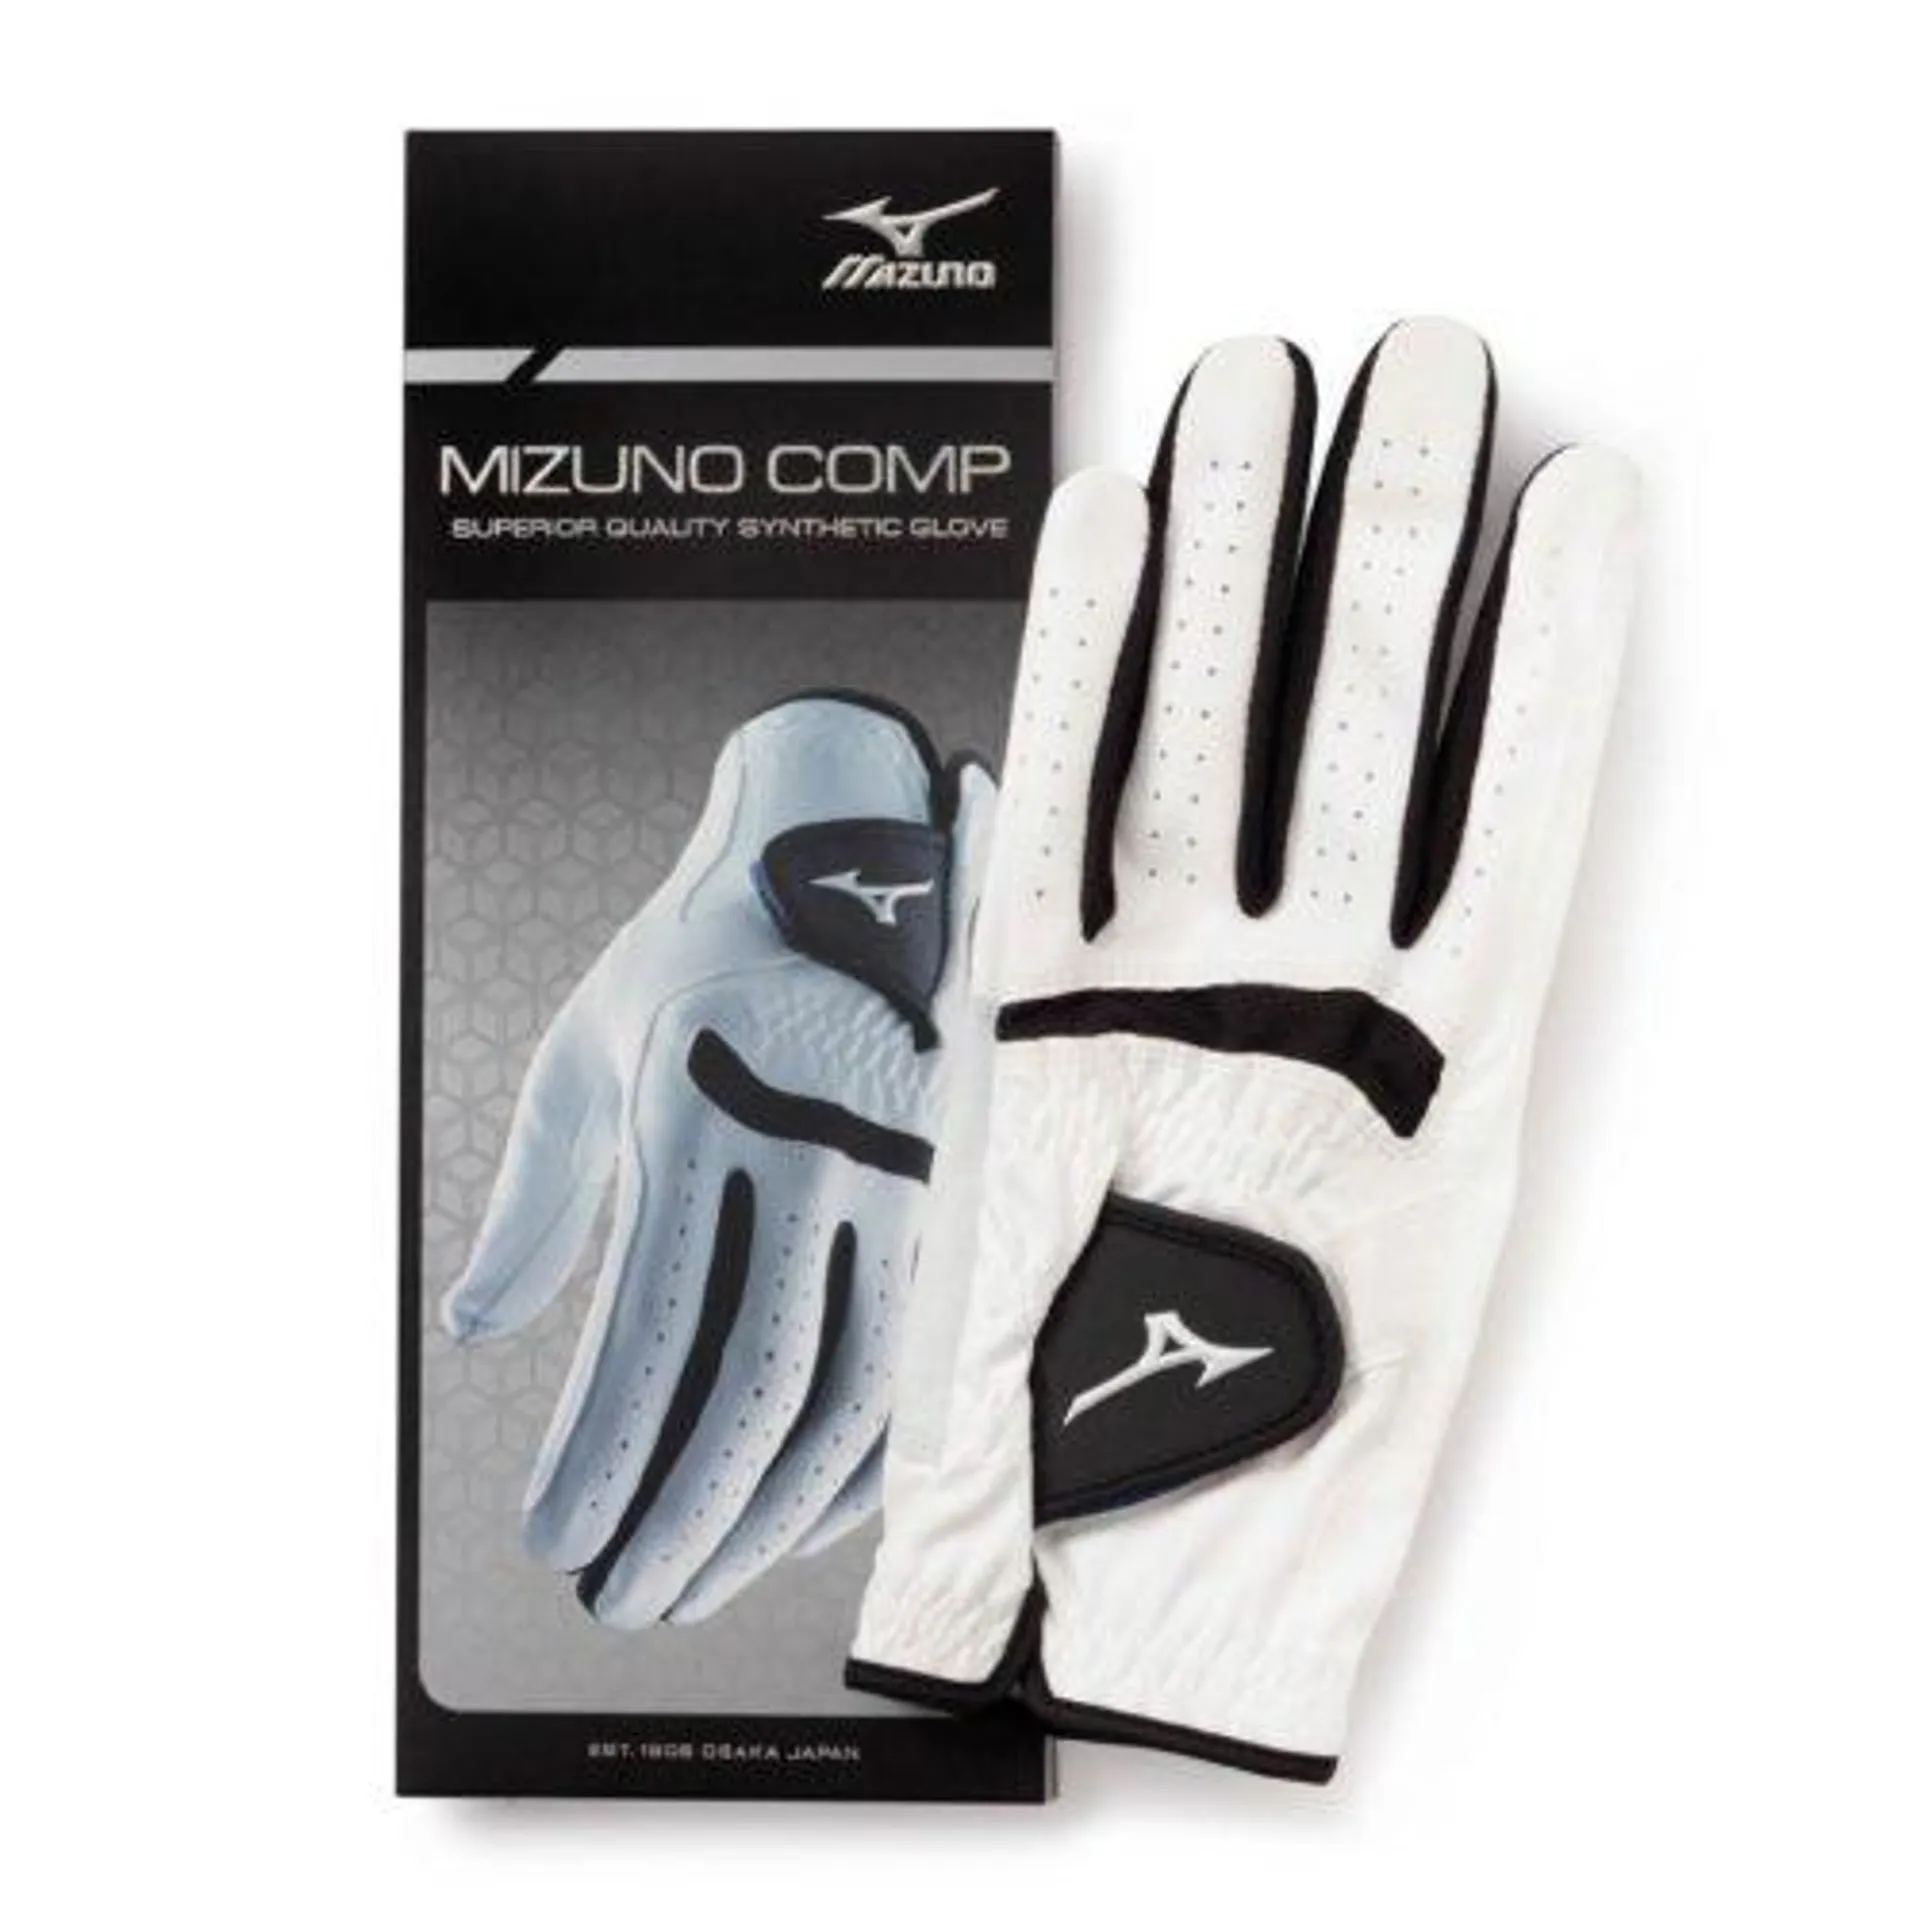 Mizuno Comp Synthetic Glove